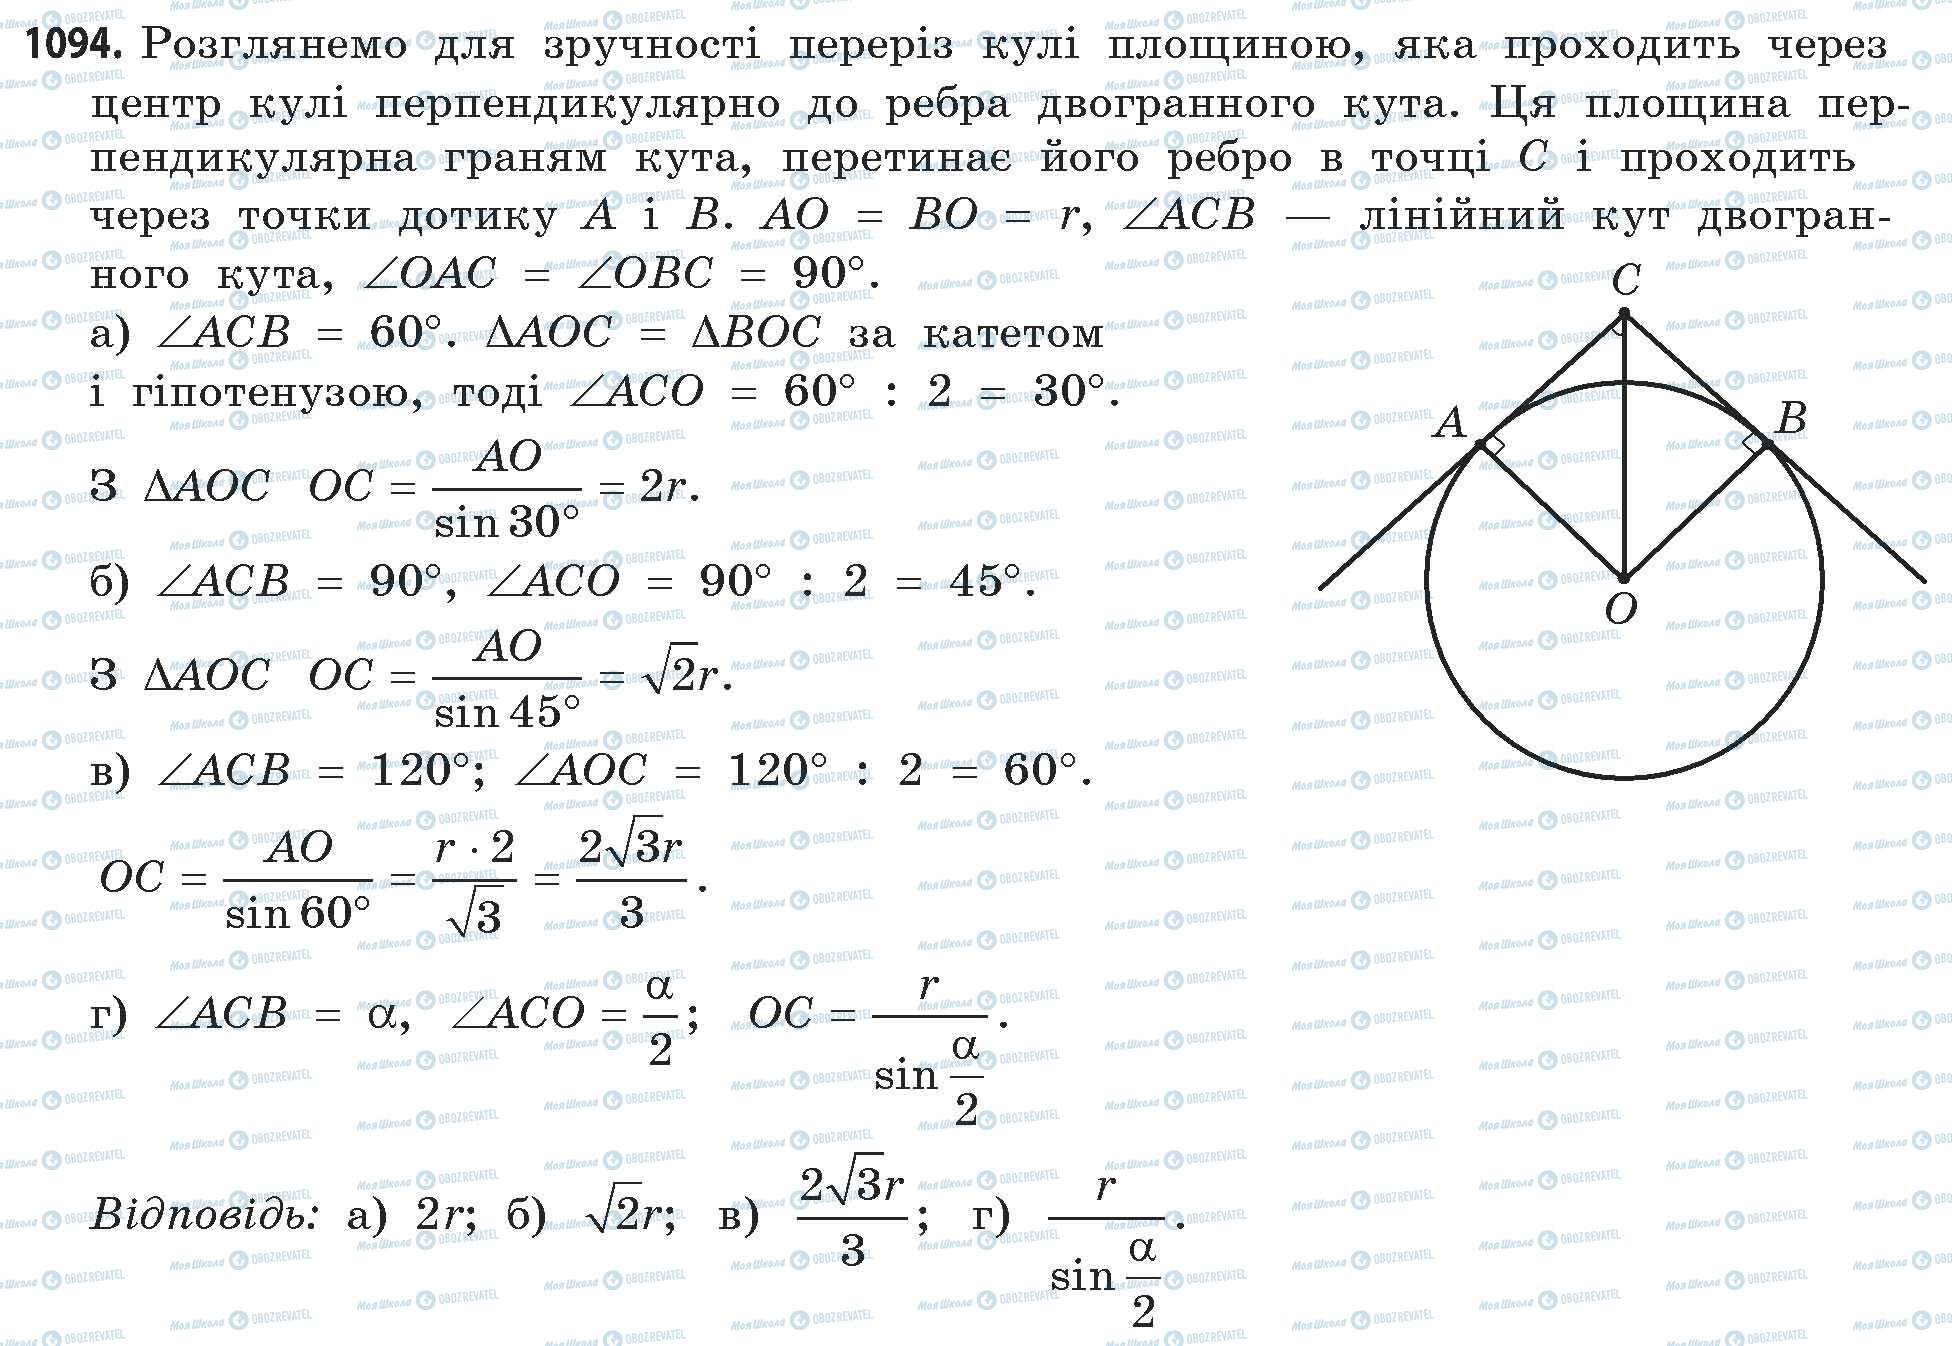 ГДЗ Математика 11 класс страница 1094